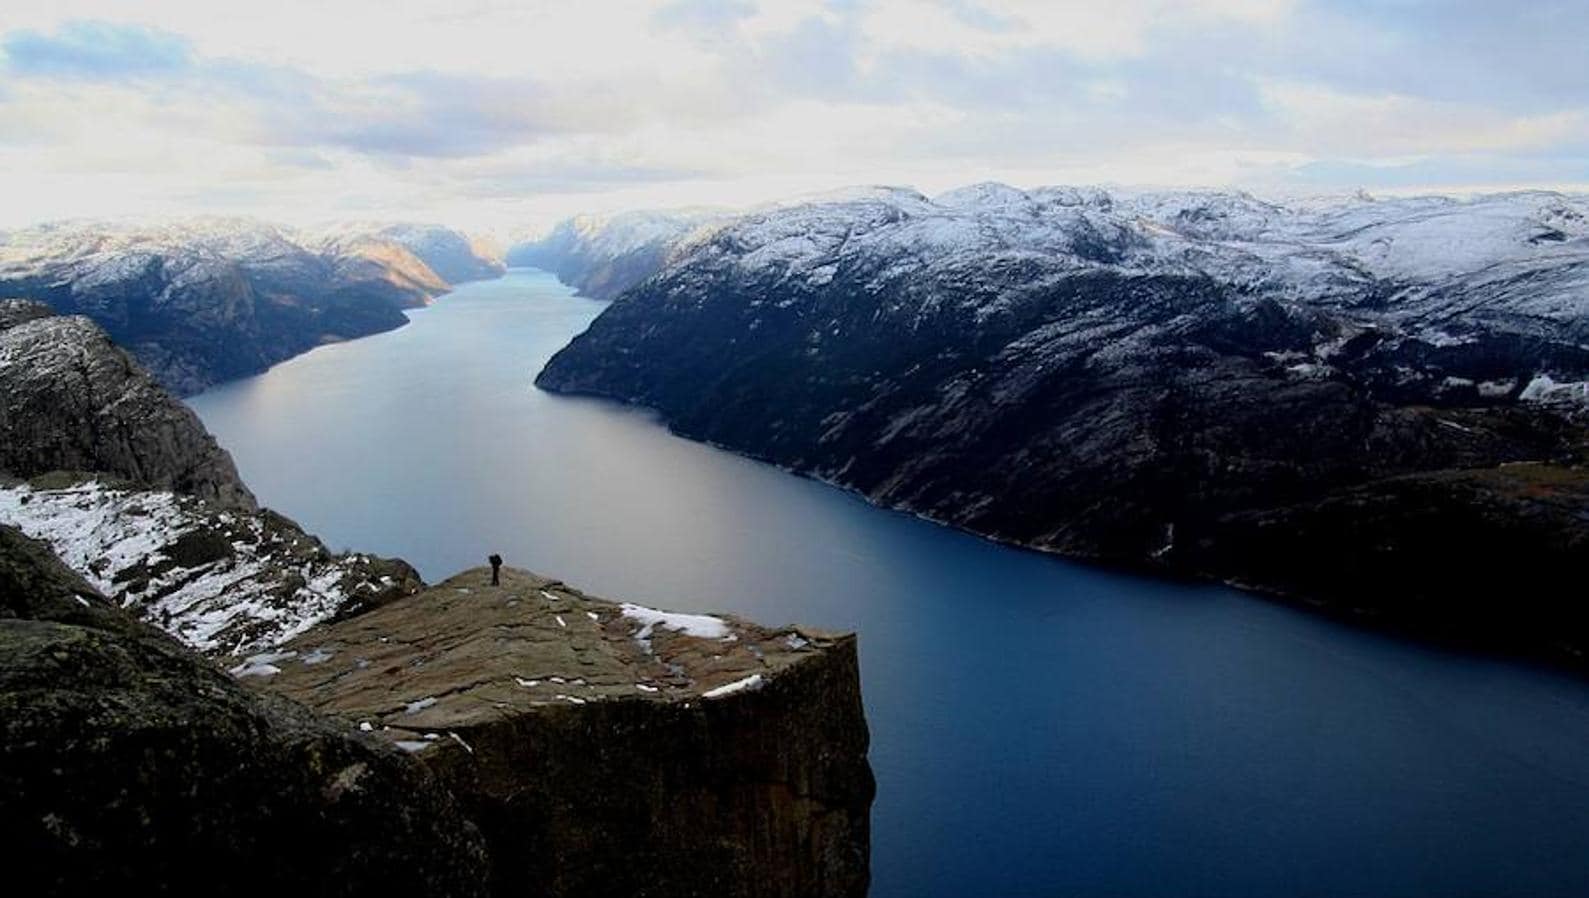 Conocido como Preikestolen o Pulpit Rock. Es el acantilado más famoso de Noruega y está situado en la costa sudoeste de Noruega.